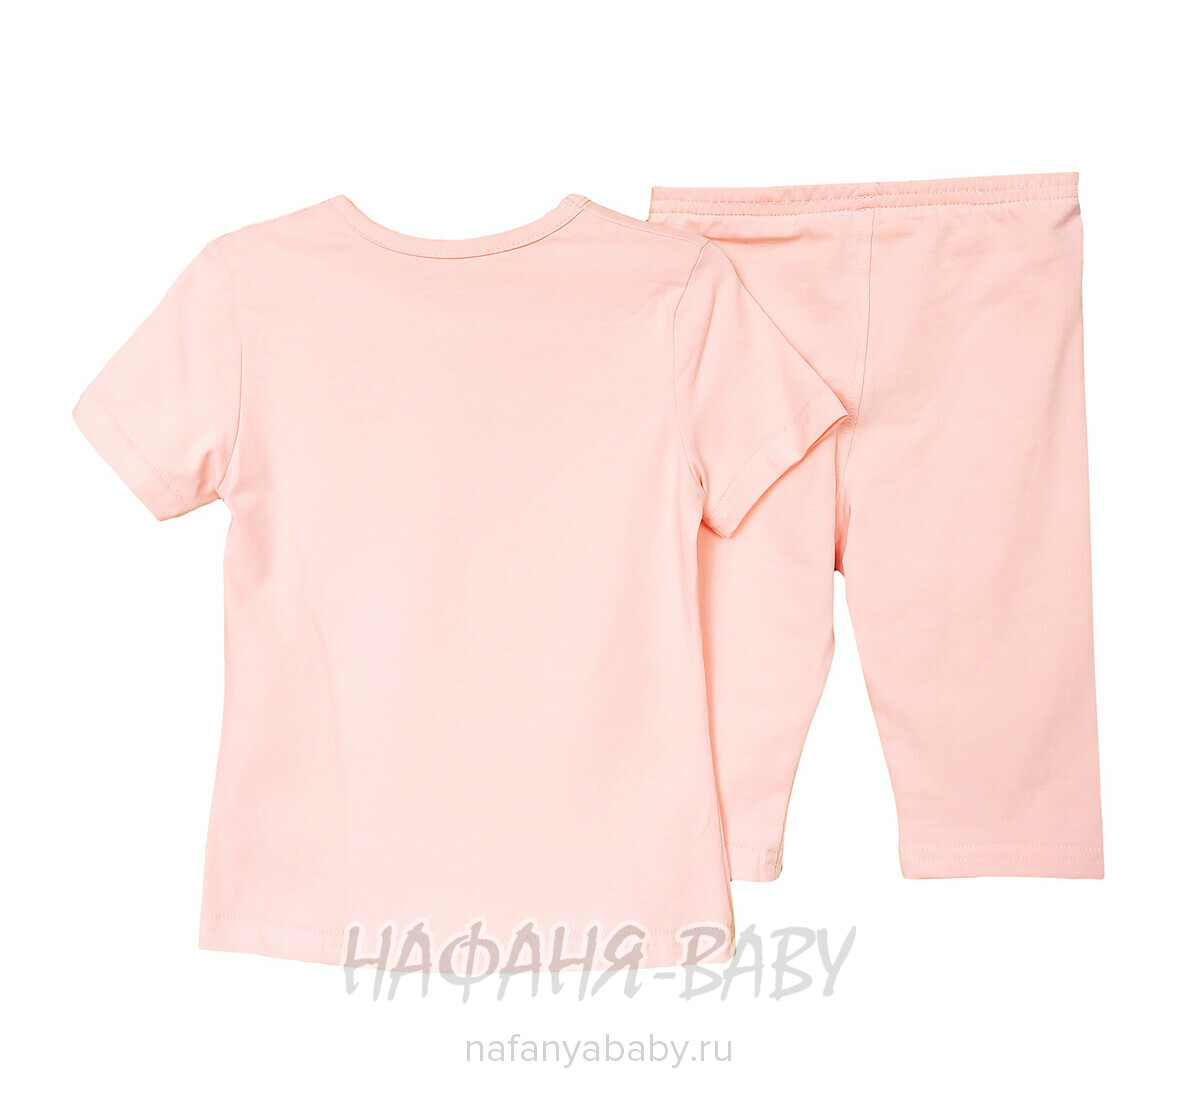 Детский костюм (футболка + лосины) RAVZA арт: 1101, 3-6 лет, цвет персиковый, оптом Турция